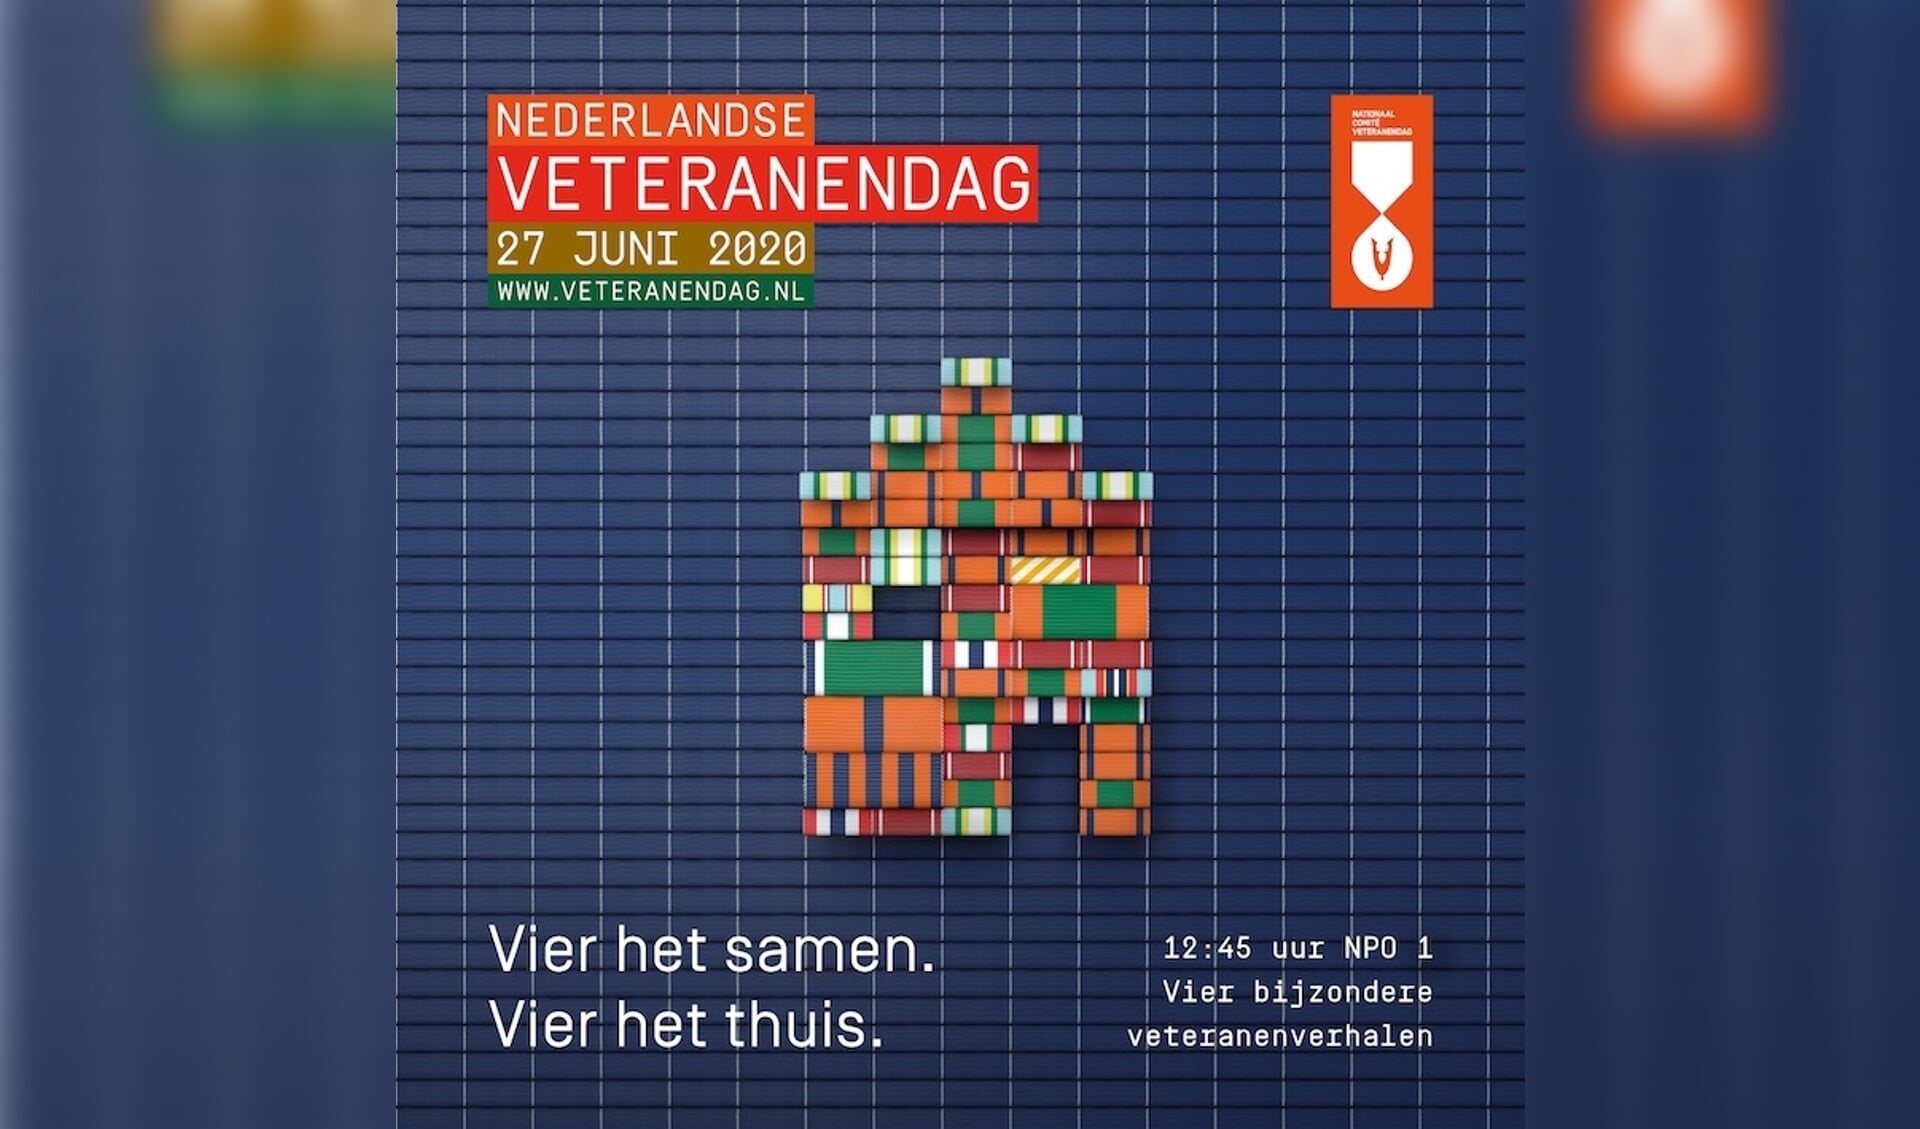 De Nederlandse Veteranendag vindt dit jaar in aangepaste vorm plaats op zaterdag 27 juni.